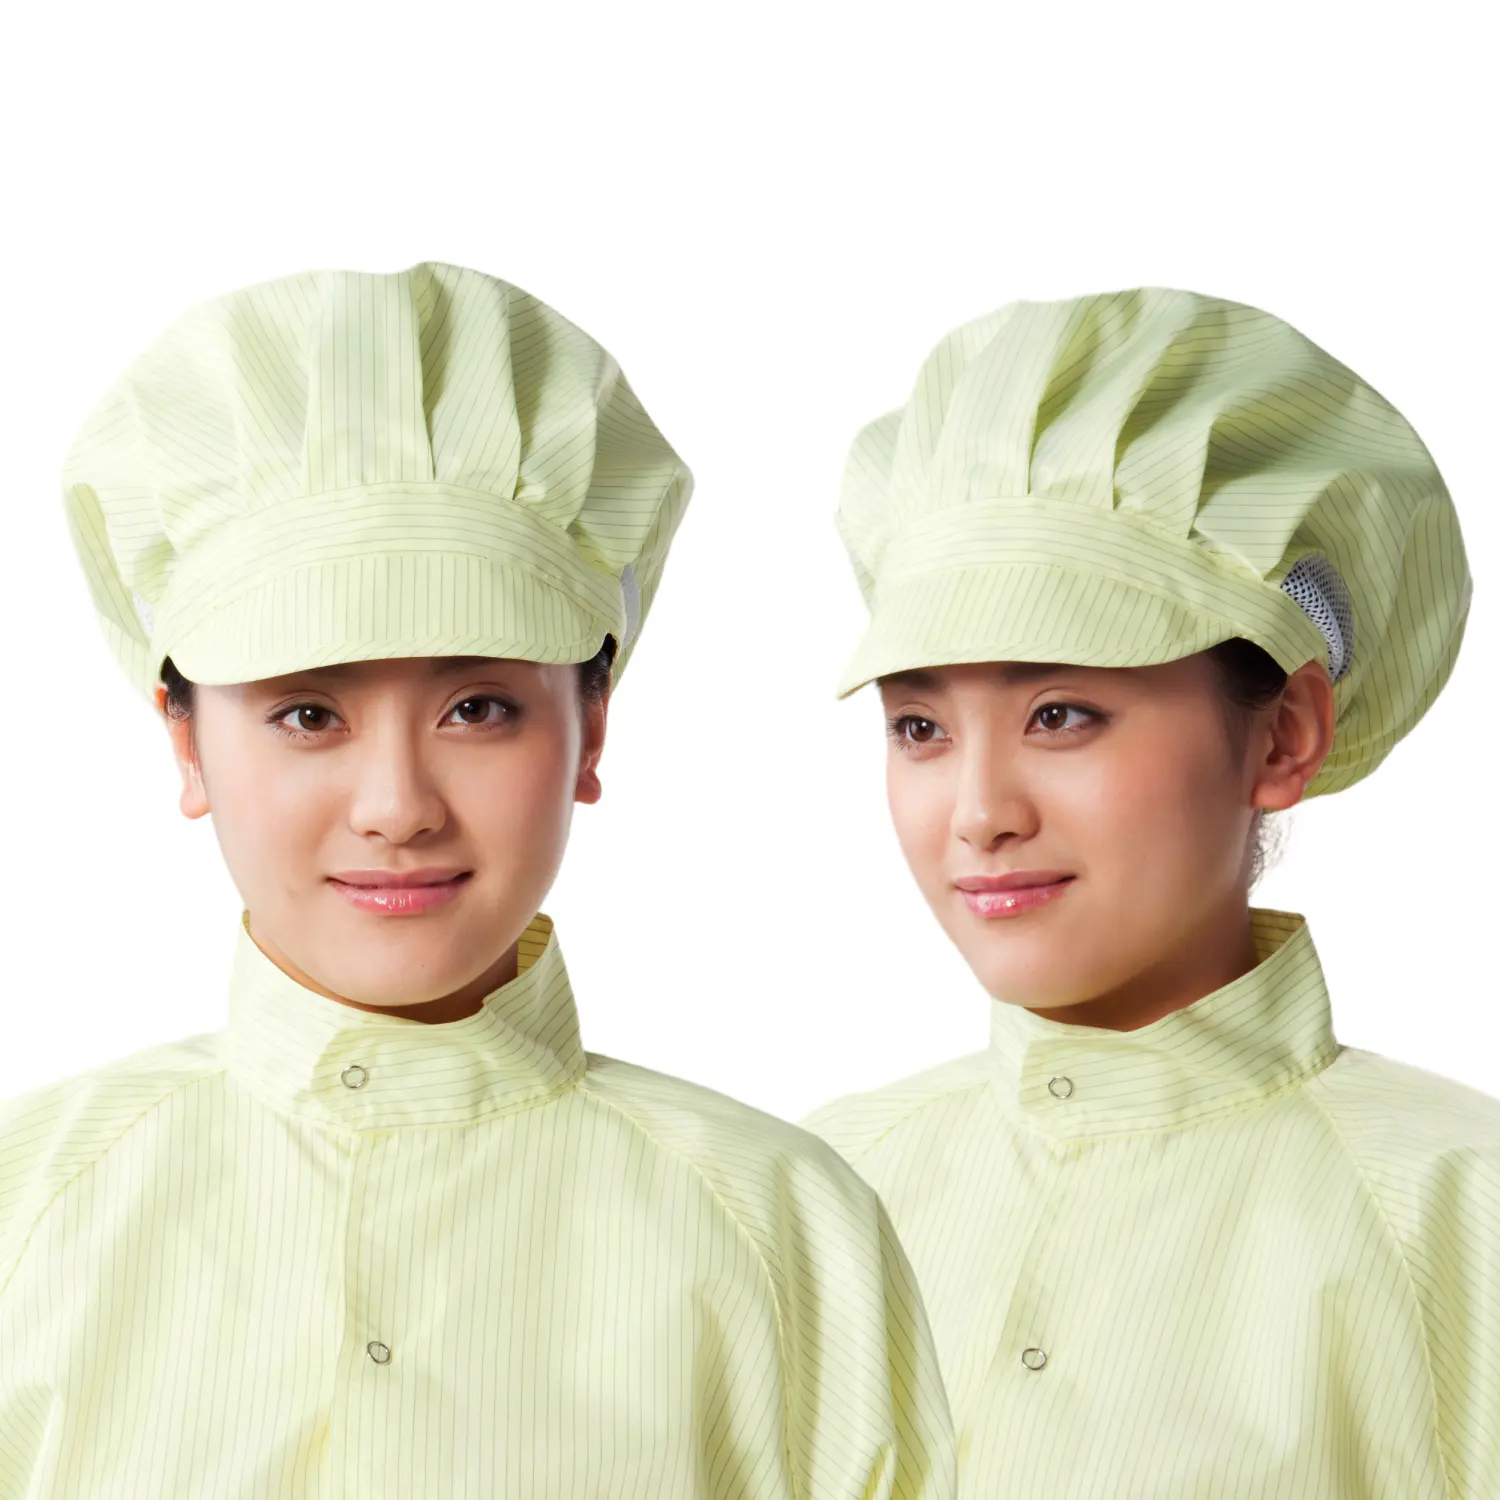 Ayarlanabilir tüy bırakmayan iş kapakları elastik nefes örgü iş için ESD kap yuvarlak şapka mutfak pişirme hizmeti